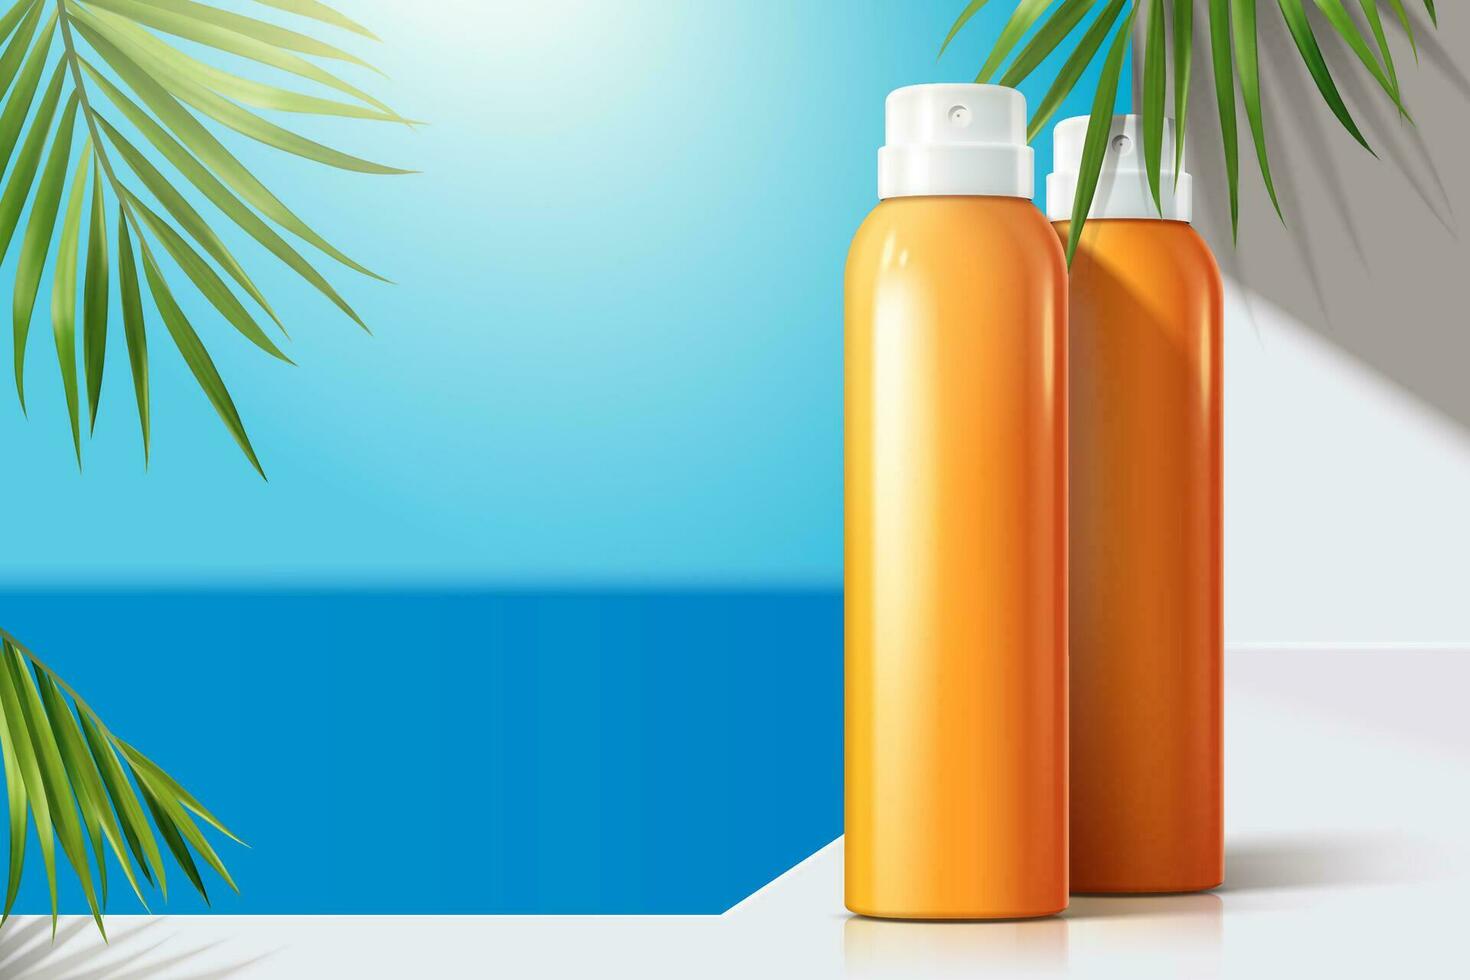 Sun spray blank bottles on white balcony with green palm leaves, 3d illustration bokeh summer ocean background vector